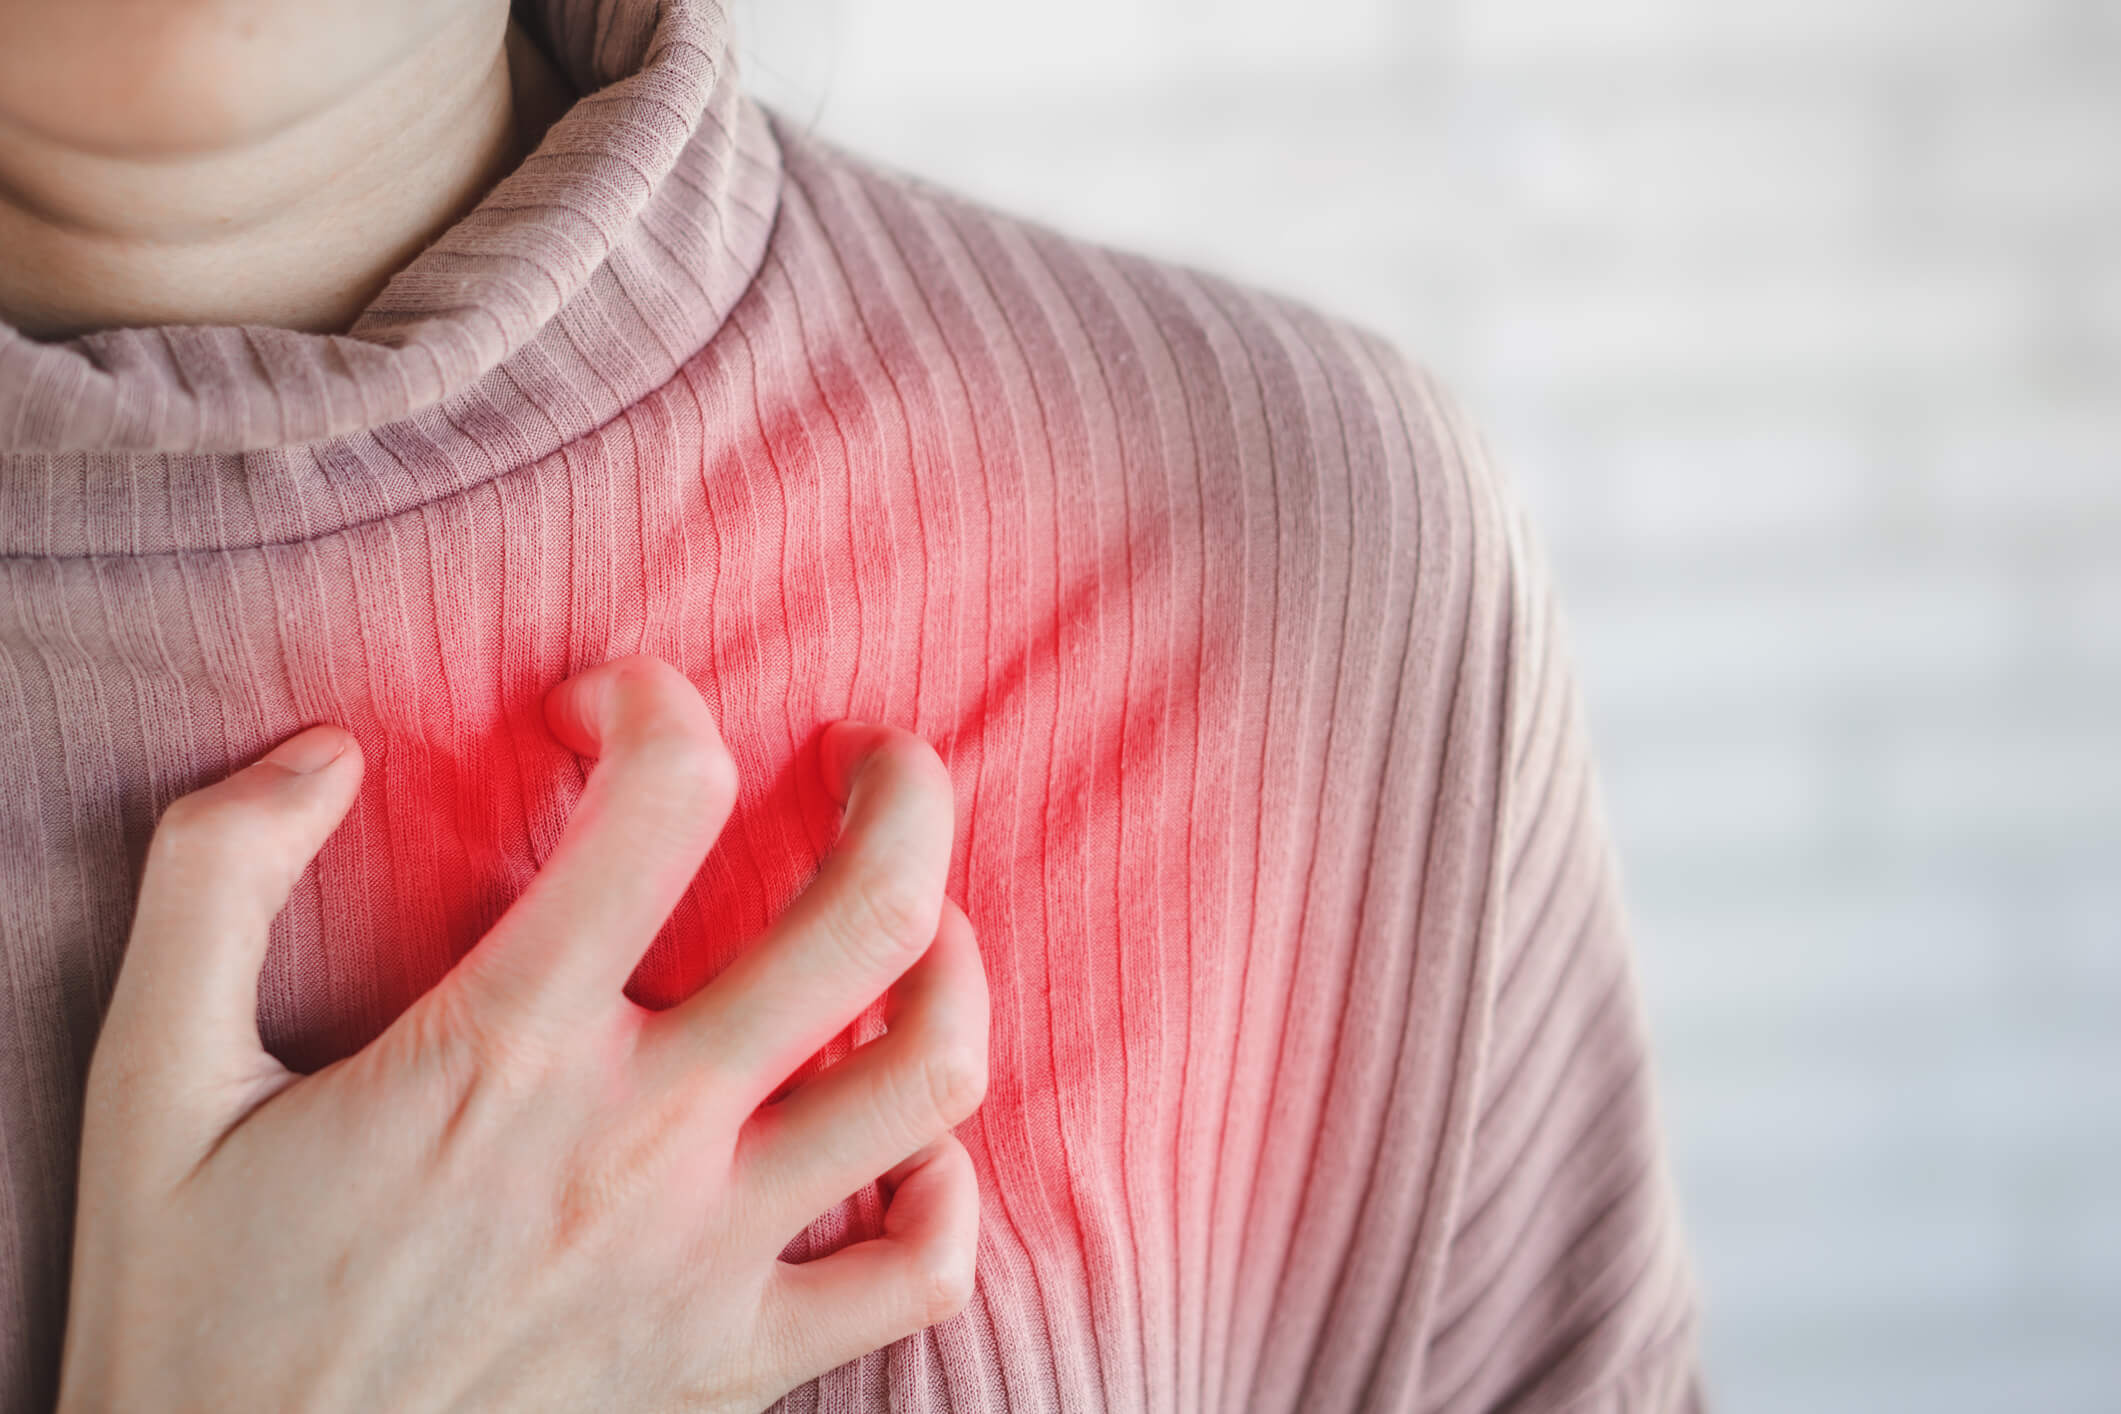 Quais os sintomas do ataque cardíaco ou infarto?